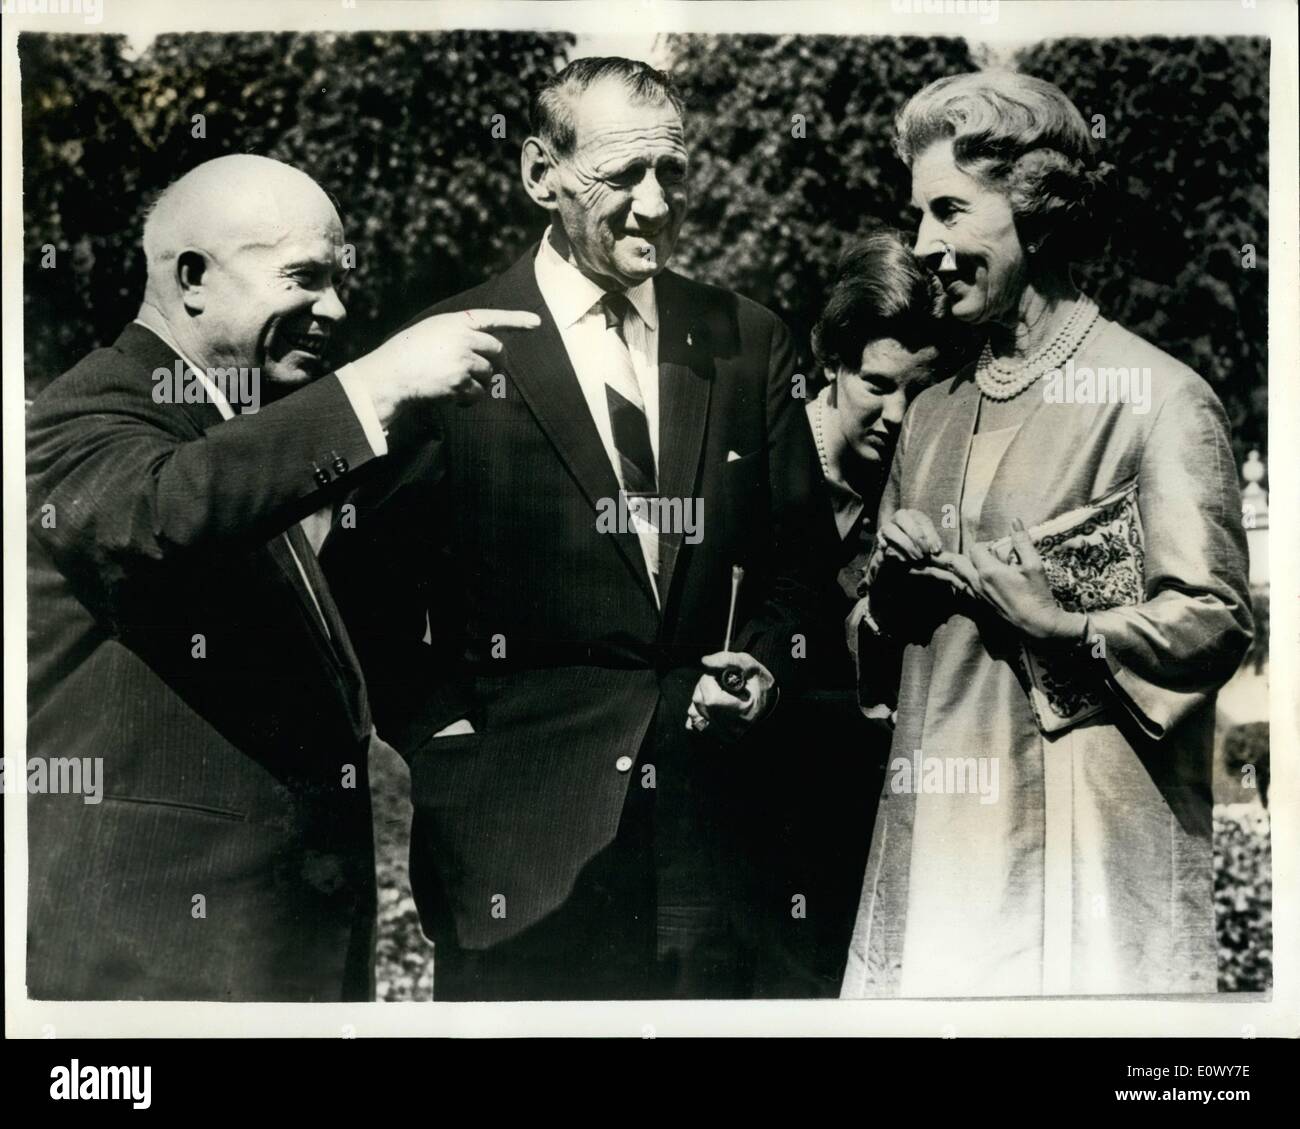 jun-06-1964-el-sr-kruschev-visitas-de-la-familia-real-danesa-primer-ministro-ruso-nikita-kruschev-que-se-encuentra-de-visita-oficial-a-dinamarca-ayer-realizo-una-visita-al-danes-residencia-estival-de-la-familia-real-fredenborg-donde-fue-recibido-por-el-rey-federico-y-la-reina-ingrid-la-foto-muestra-de-izquierda-a-derecha-el-sr-kruschev-el-rey-federico-y-la-reina-ingrid-en-fredenbourg-ayer-e0wy7e.jpg